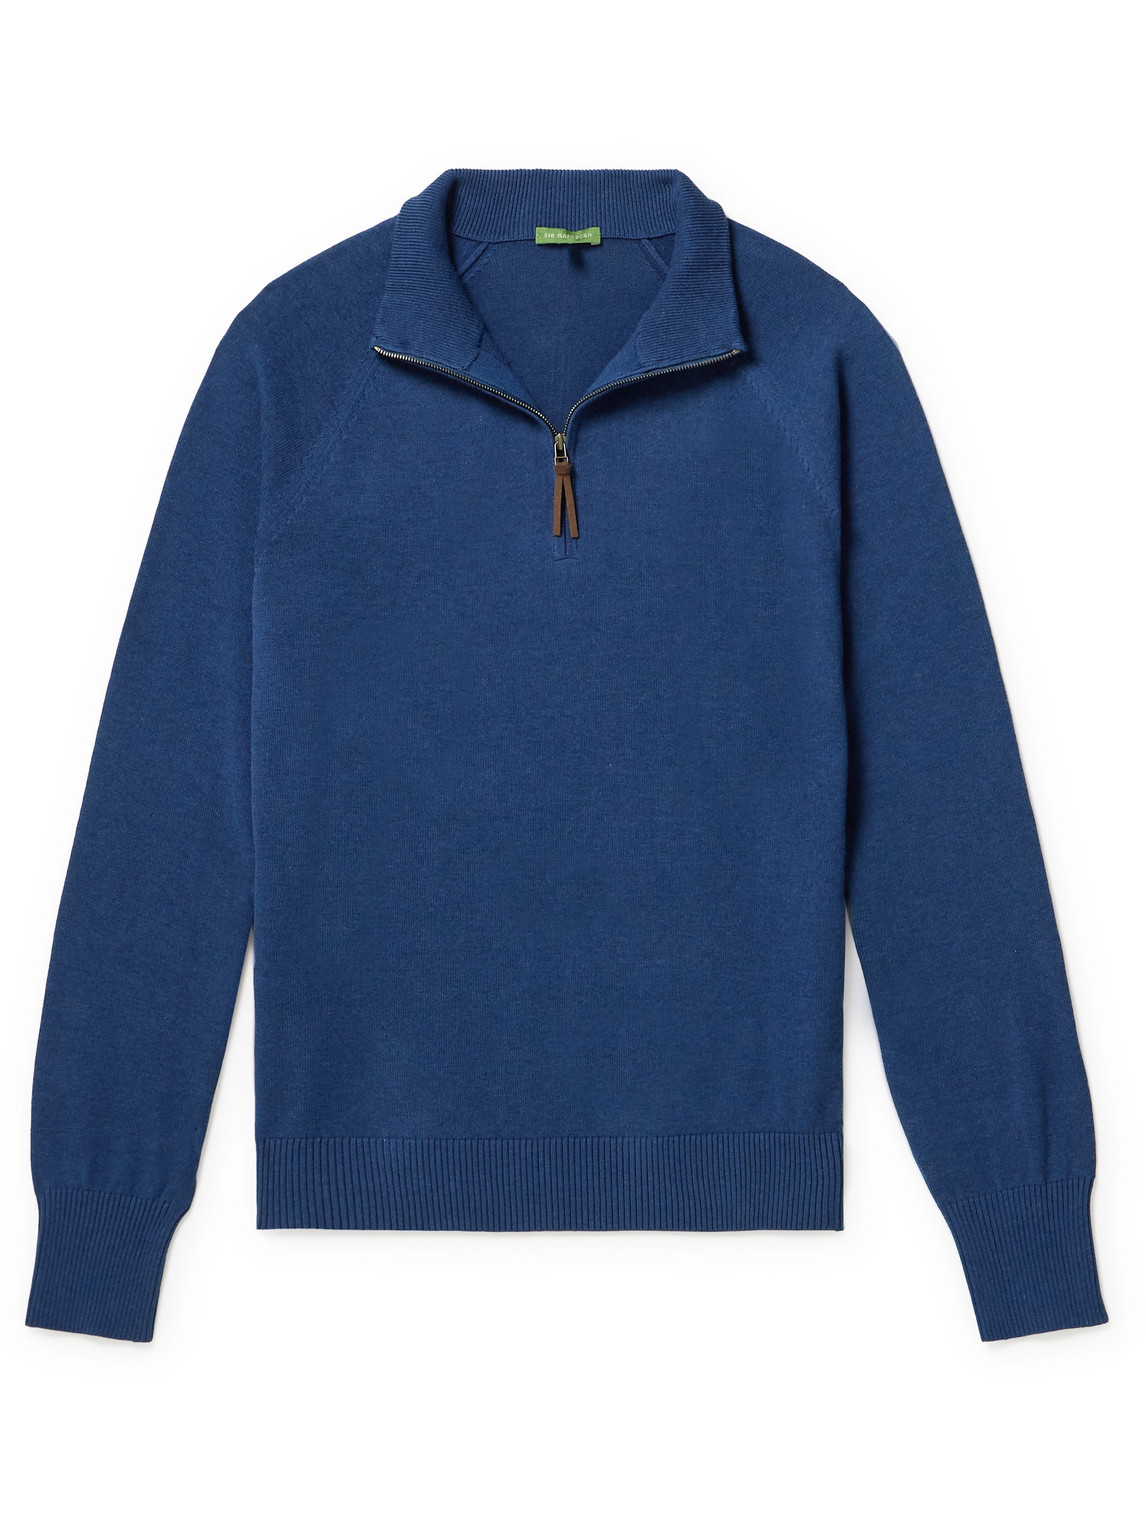 Cotton Half-Zip Sweater